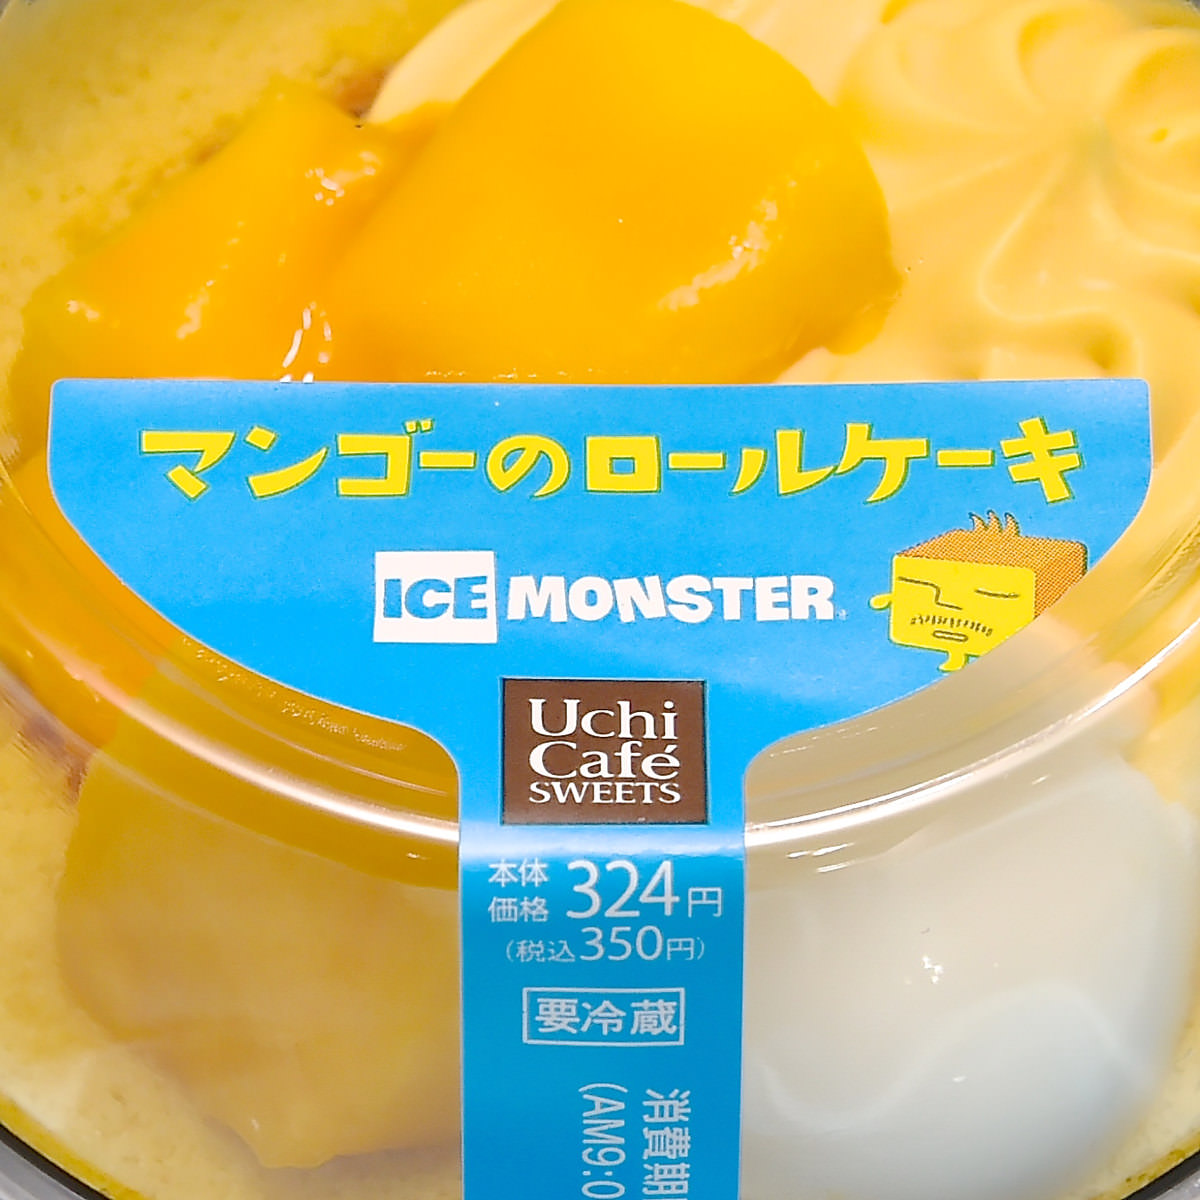 ローソン「Uchi Café SWEETS×ICE MONSTERマンゴーのロールケーキ」パッケージアップ